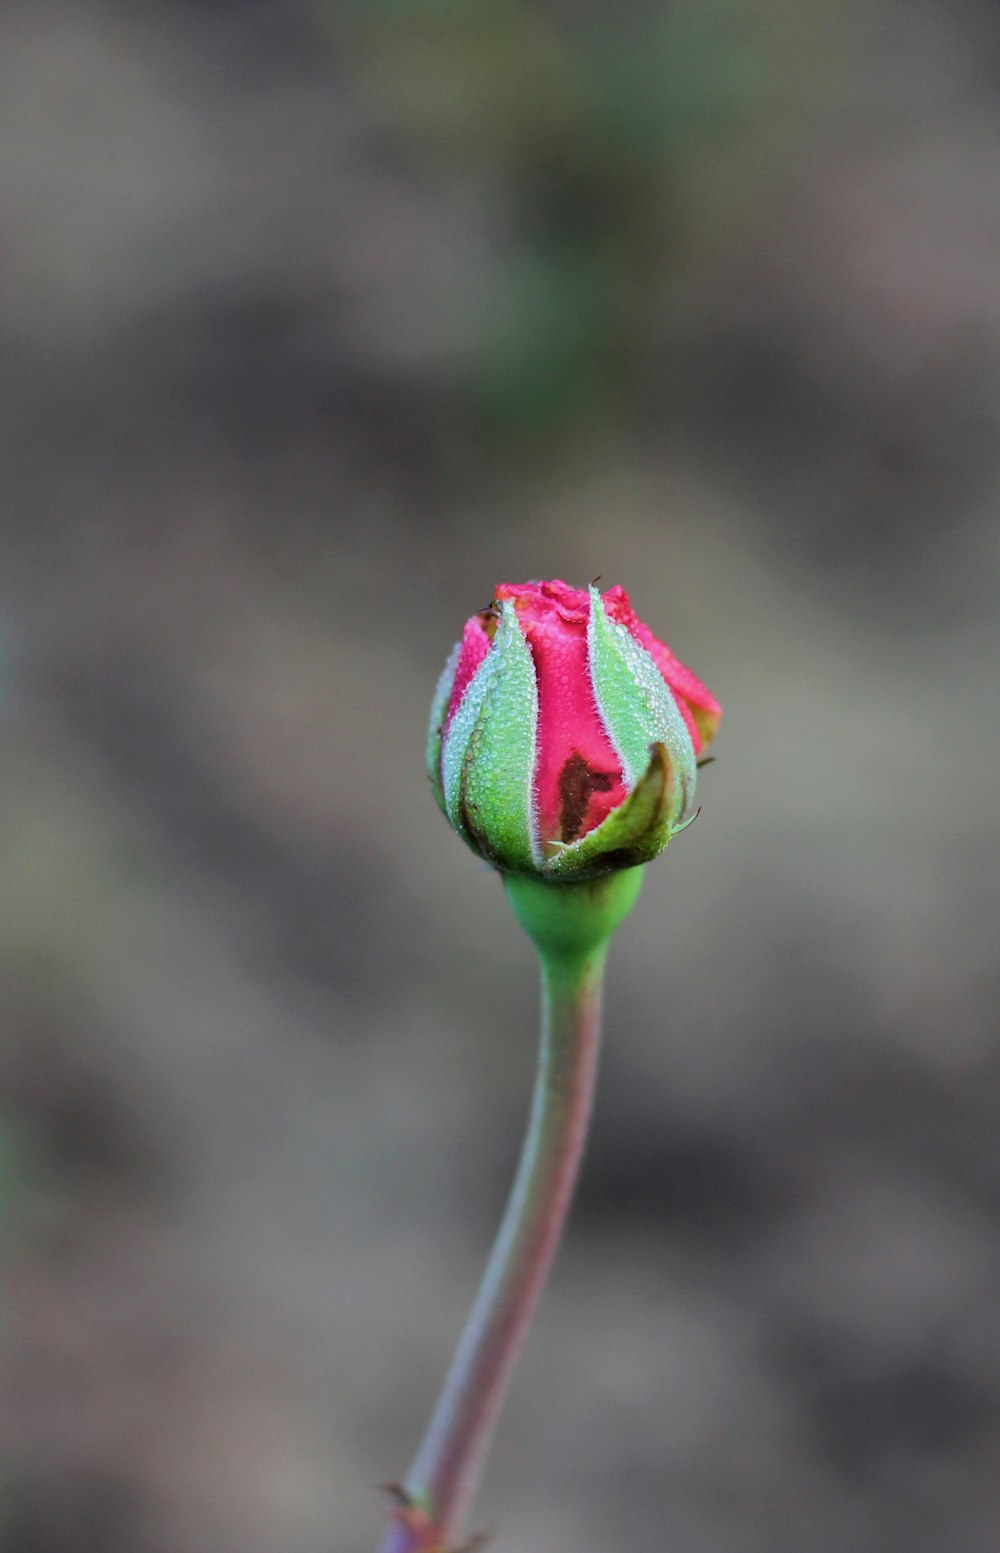 capullo de flor rosa en fotografía de primer plano